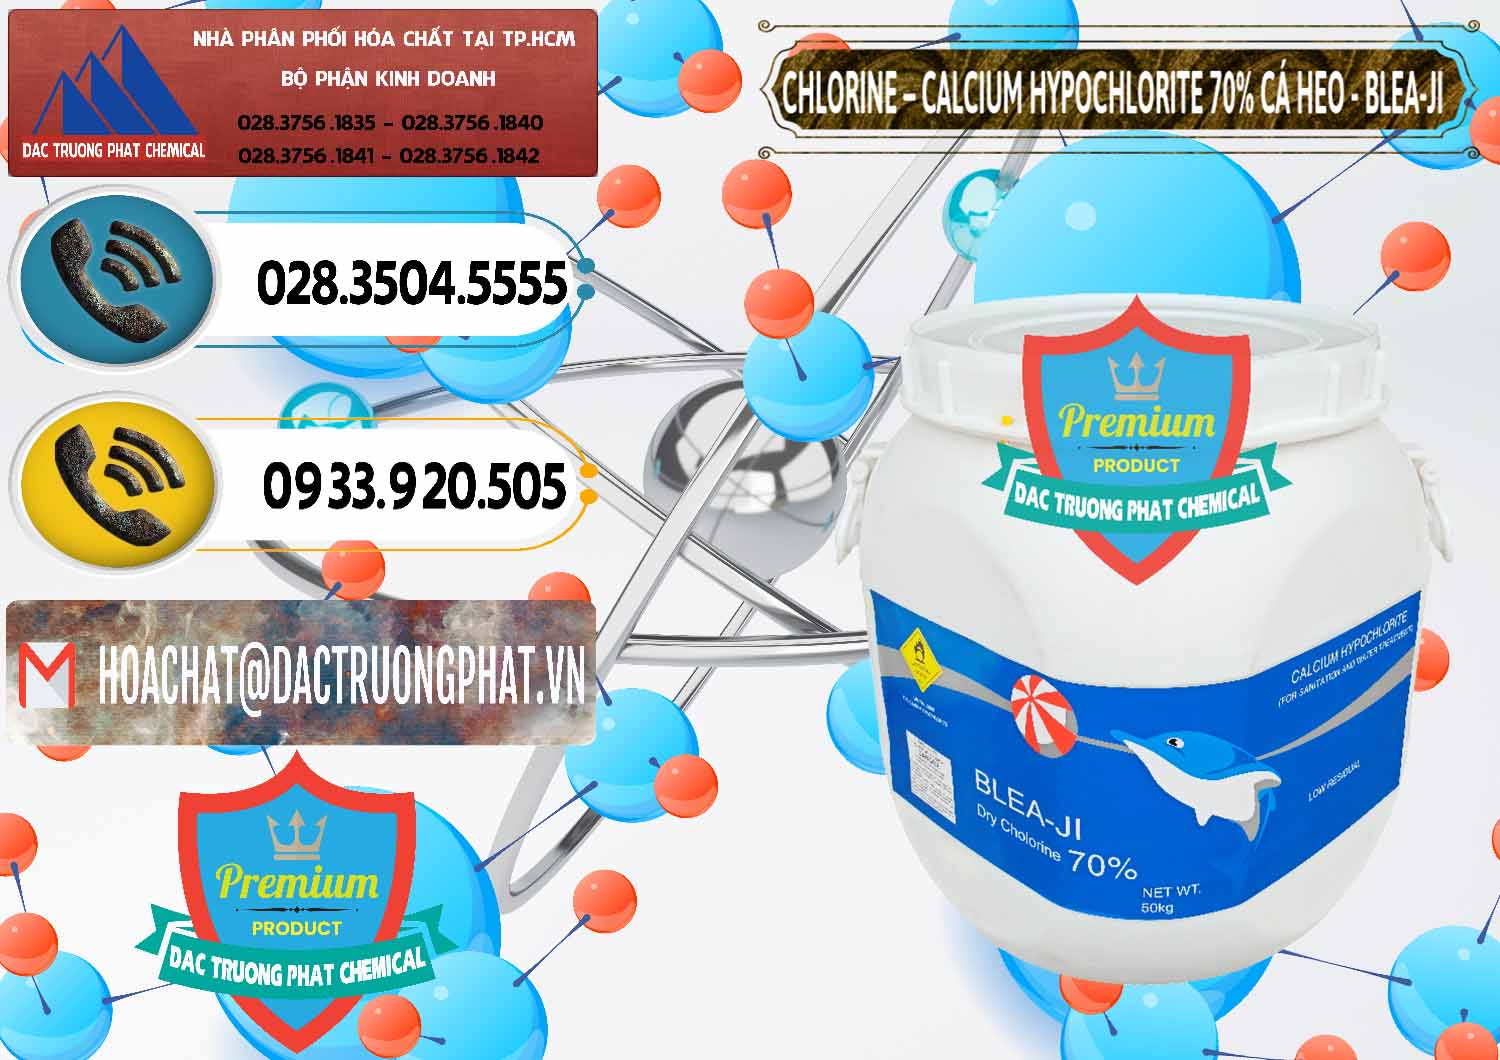 Bán & cung ứng Clorin - Chlorine Cá Heo 70% Blea-Ji Trung Quốc China - 0056 - Cty cung cấp - kinh doanh hóa chất tại TP.HCM - hoachatdetnhuom.vn